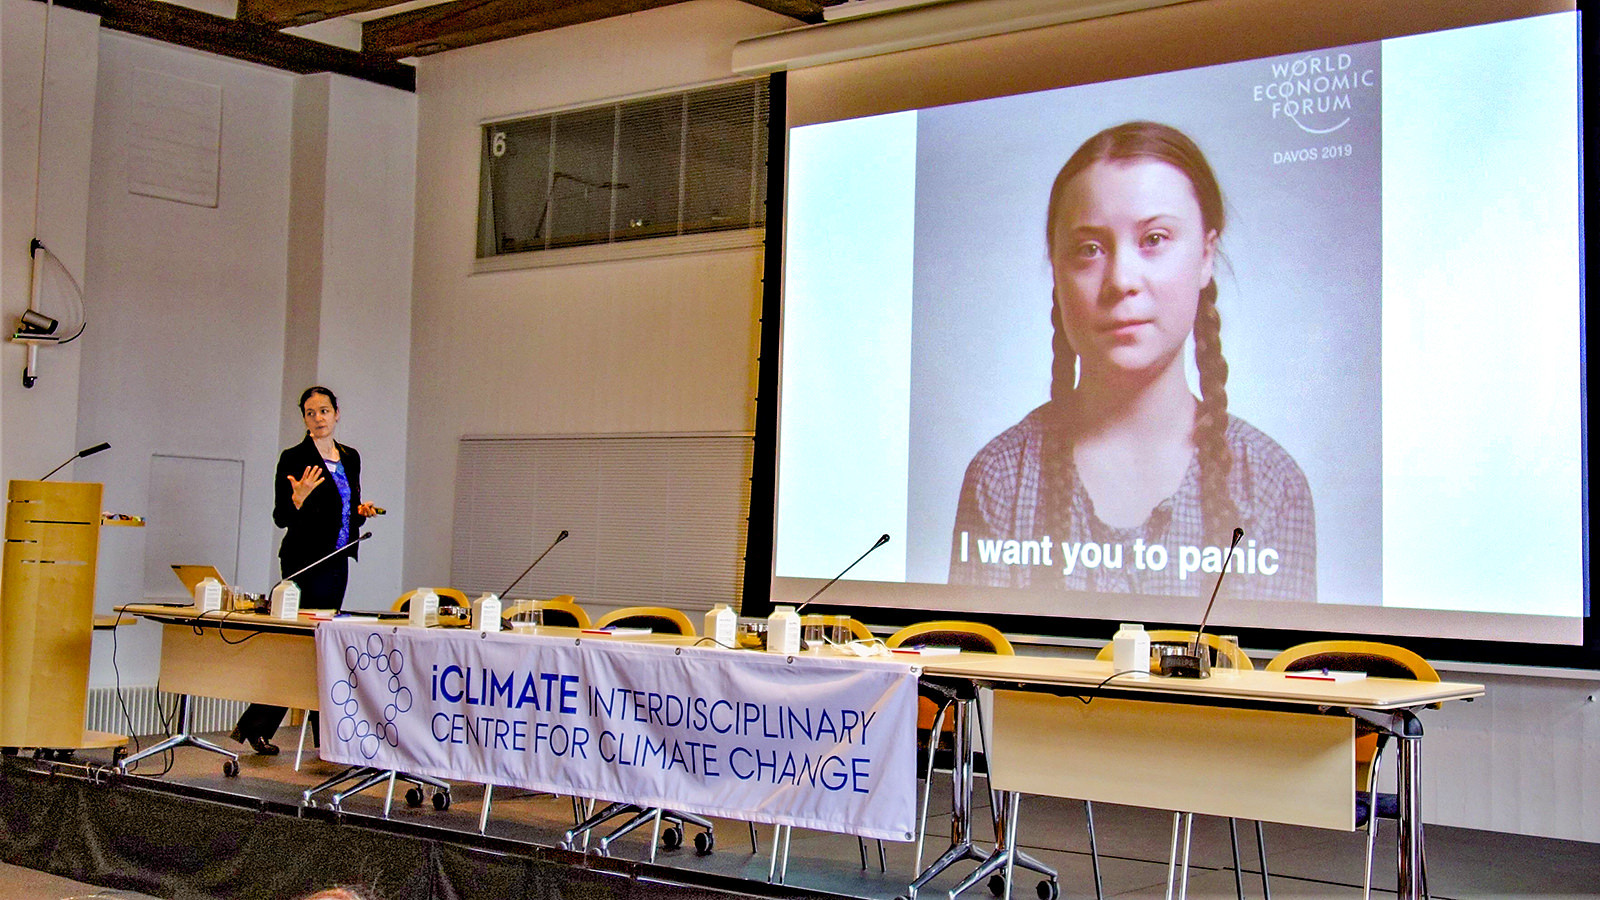 Jessica A. Witzel, professor ved Institut for Virksomhedsledelse på AU viser et stort billede af den svenske klimaaktivist Greta Thunberg med teksten 